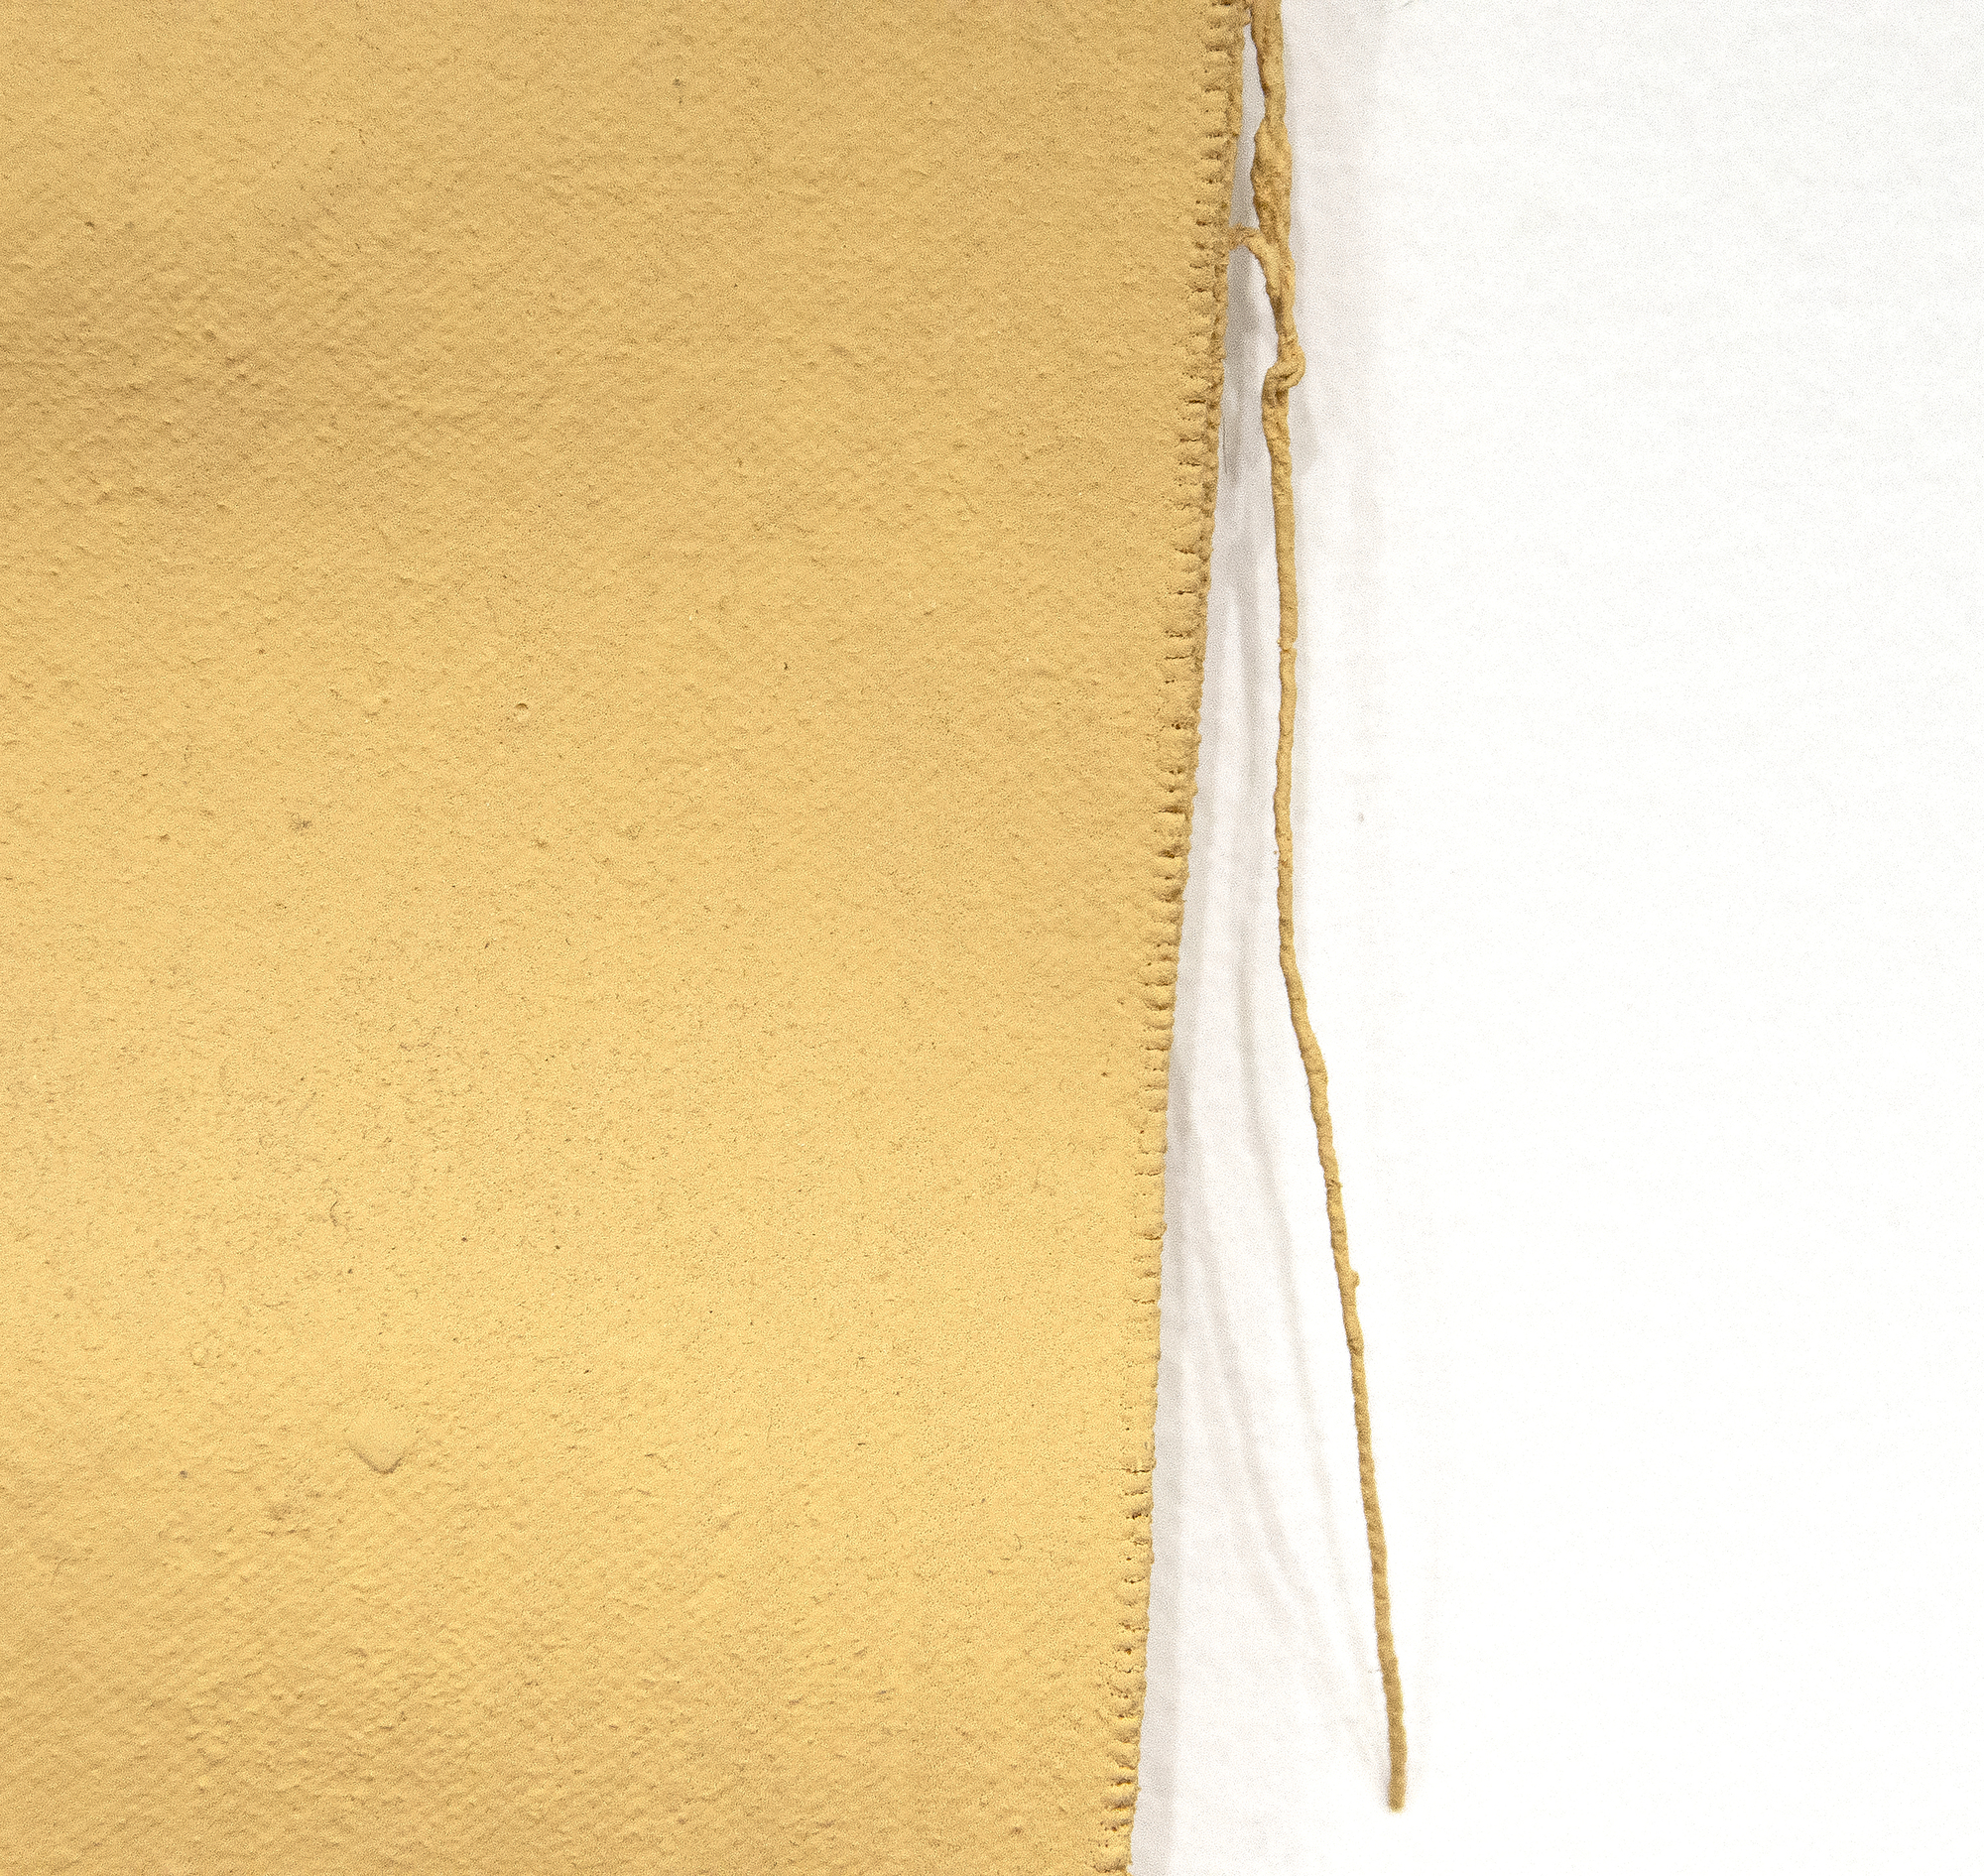 Richard Tuttle ist ein wegweisender amerikanischer postminimalistischer Künstler. Tuttle's Arbeit ist konzeptuell und meditativ, überschreitet die Grenzen von Skulptur, Malerei und Poesie und fordert den Betrachter oft heraus. Ohne Titel (Cloth and Paint Work #2) von 1973, einer entscheidenden Phase in der Karriere des Künstlers, erinnert an den früheren Minimalismus seiner Karriere und drängt auf materialbasierte Konzeptkunst. In seiner Arbeit würdigt er die Readymades von Marcel Duchamp. Textilien spielen, wie in diesem Stück, eine große Rolle in seinem Werk und werden zu Orten, an denen Performance, Engagement und Bedeutung im Mittelpunkt stehen.